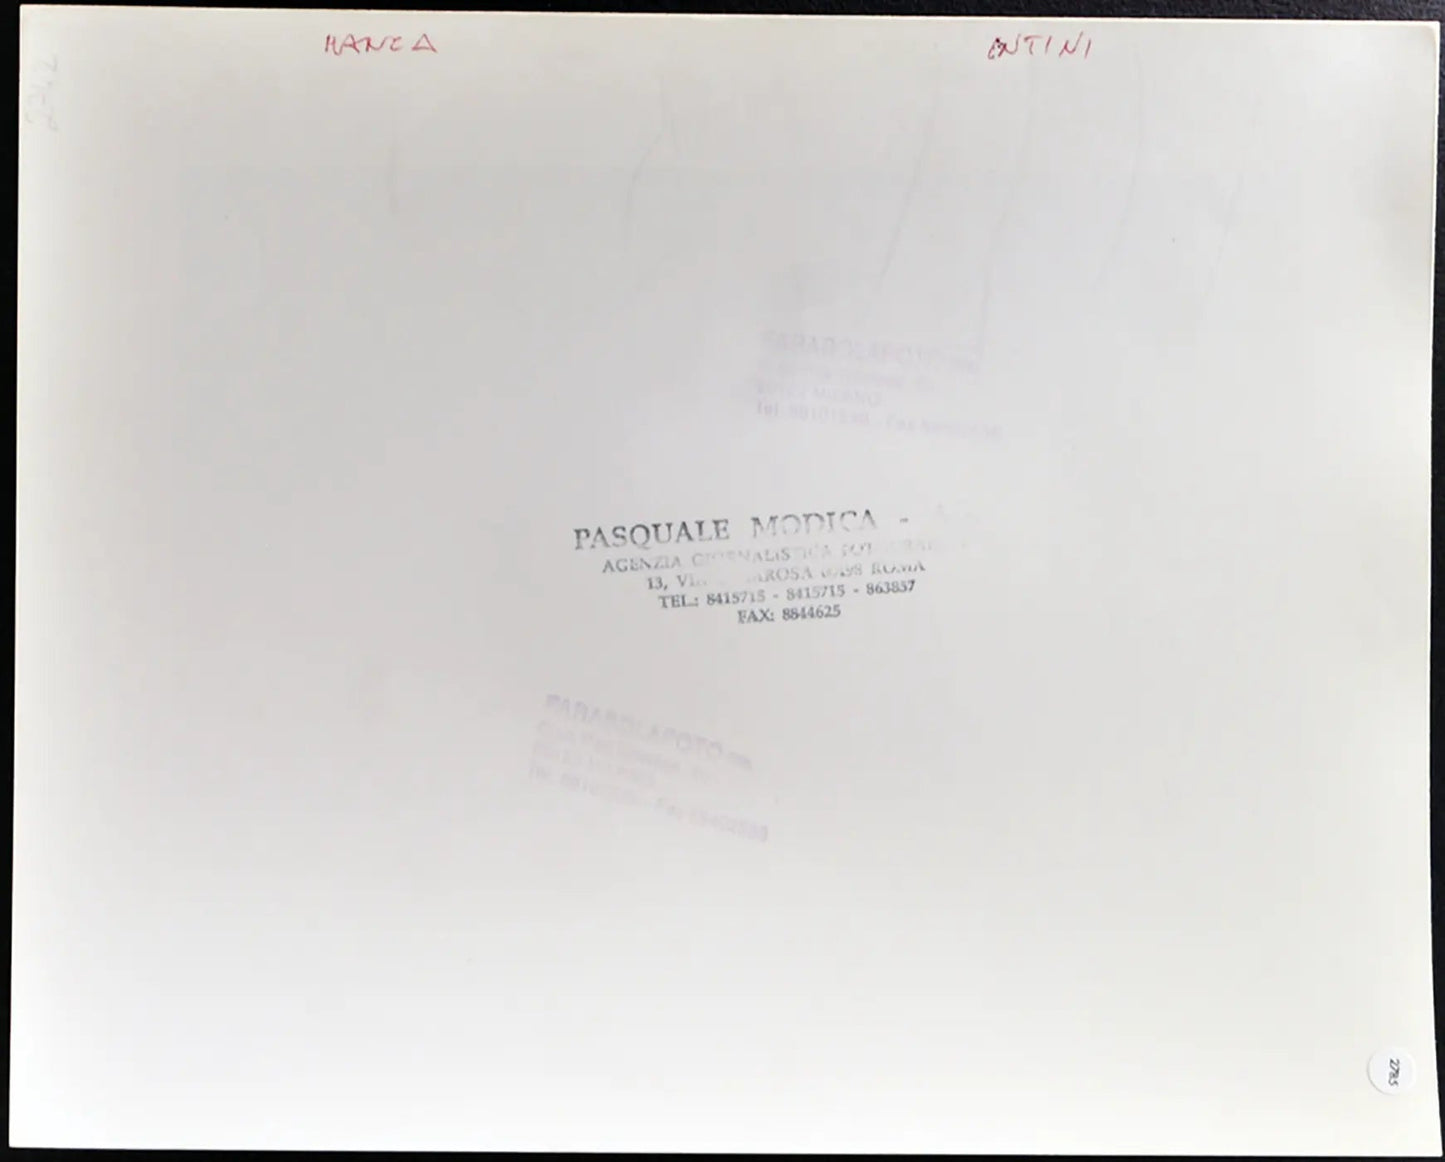 Manca e intini anni 90 Ft 2785 - Stampa 24x30 cm - Farabola Stampa ai sali d'argento